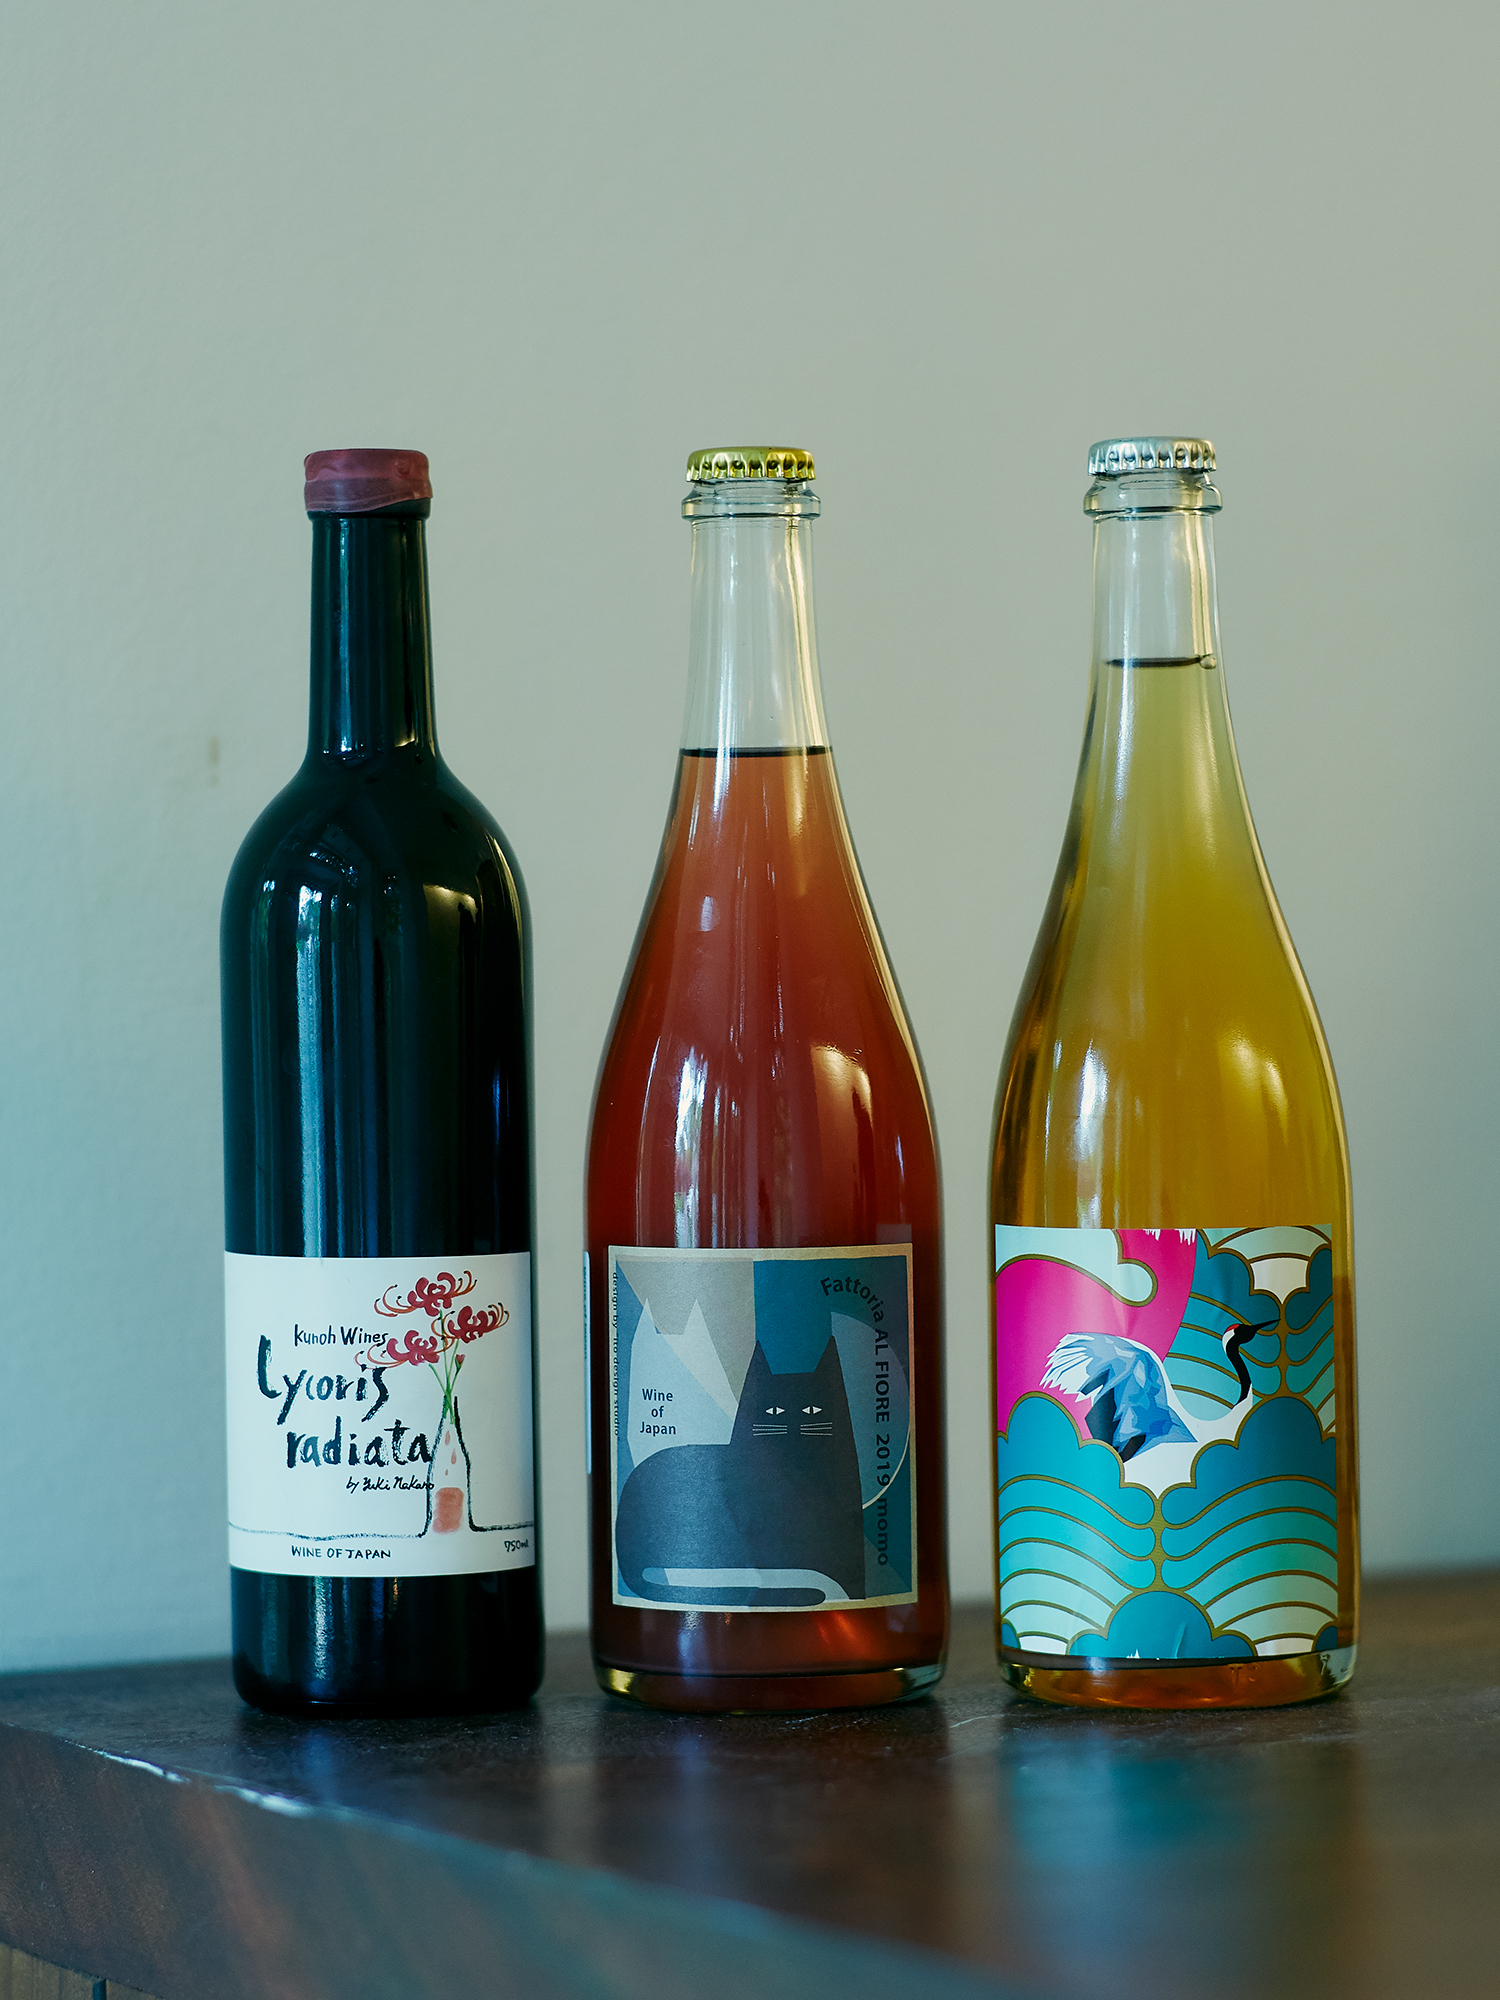 (From left) Lycoris radiata by Kunoh Wines, momo by Fattoria AL FIORE, and Ambra Frizzante by Grape Republic